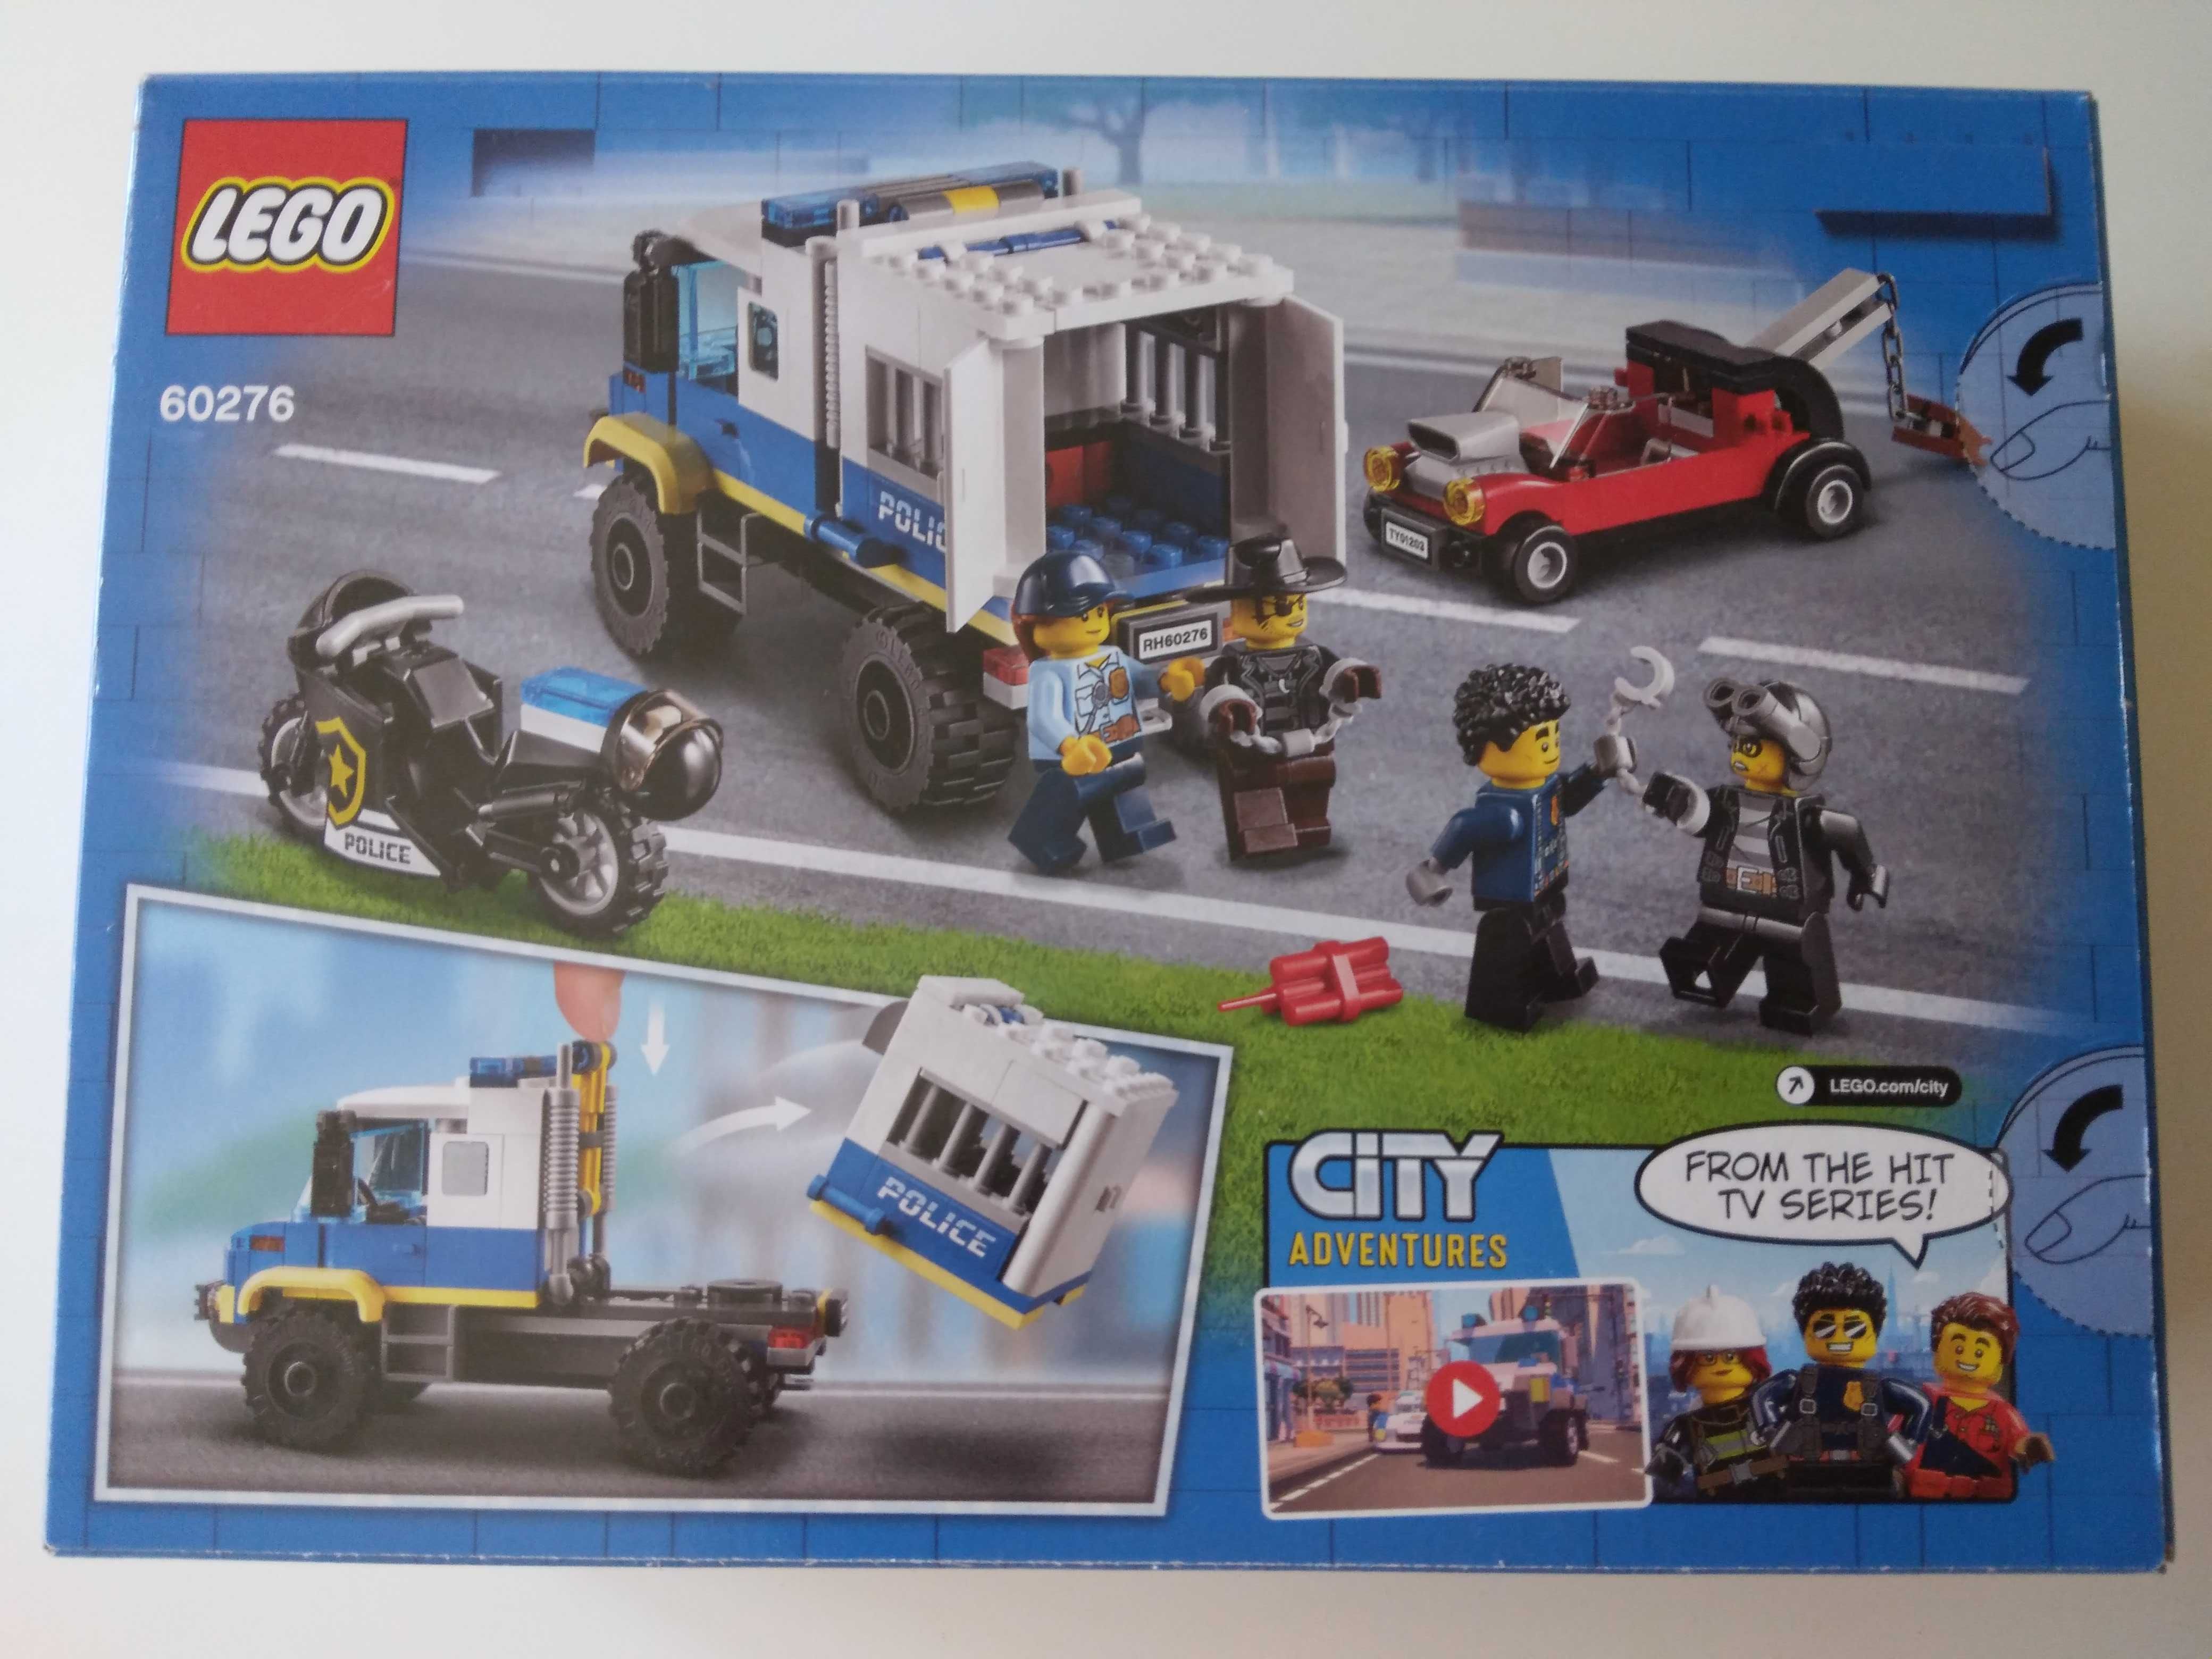 Transportul prizonierilor de politie,vehicule minifig. Lego 60276, nou